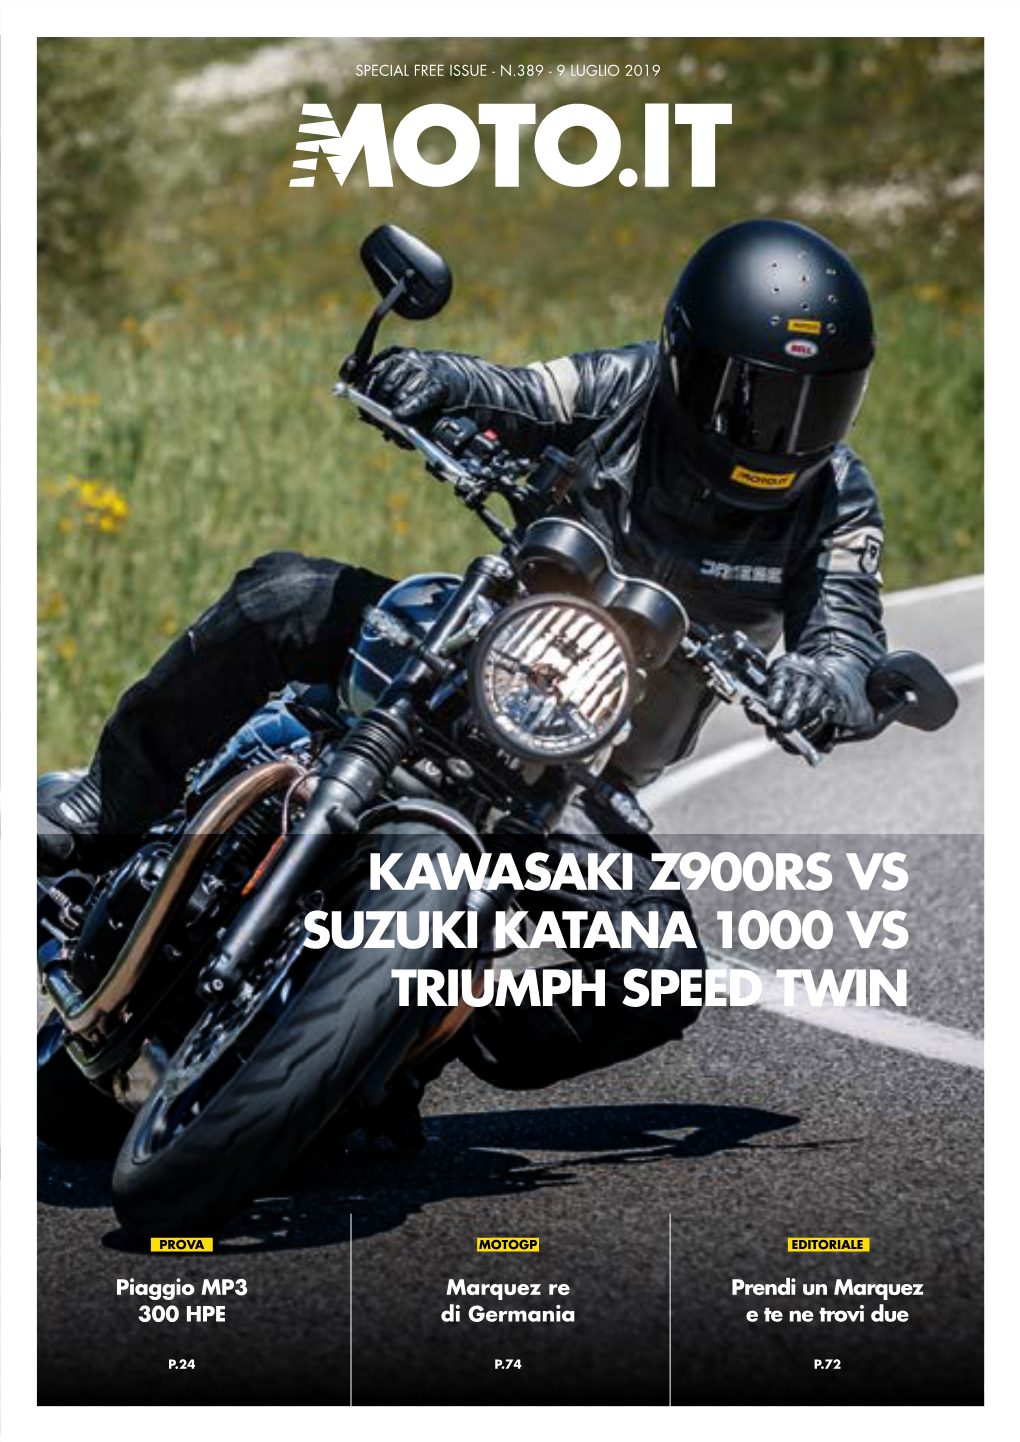 Kawasaki Z900rs Vs Suzuki Katana 1000 Vs Triumph Speed Twin